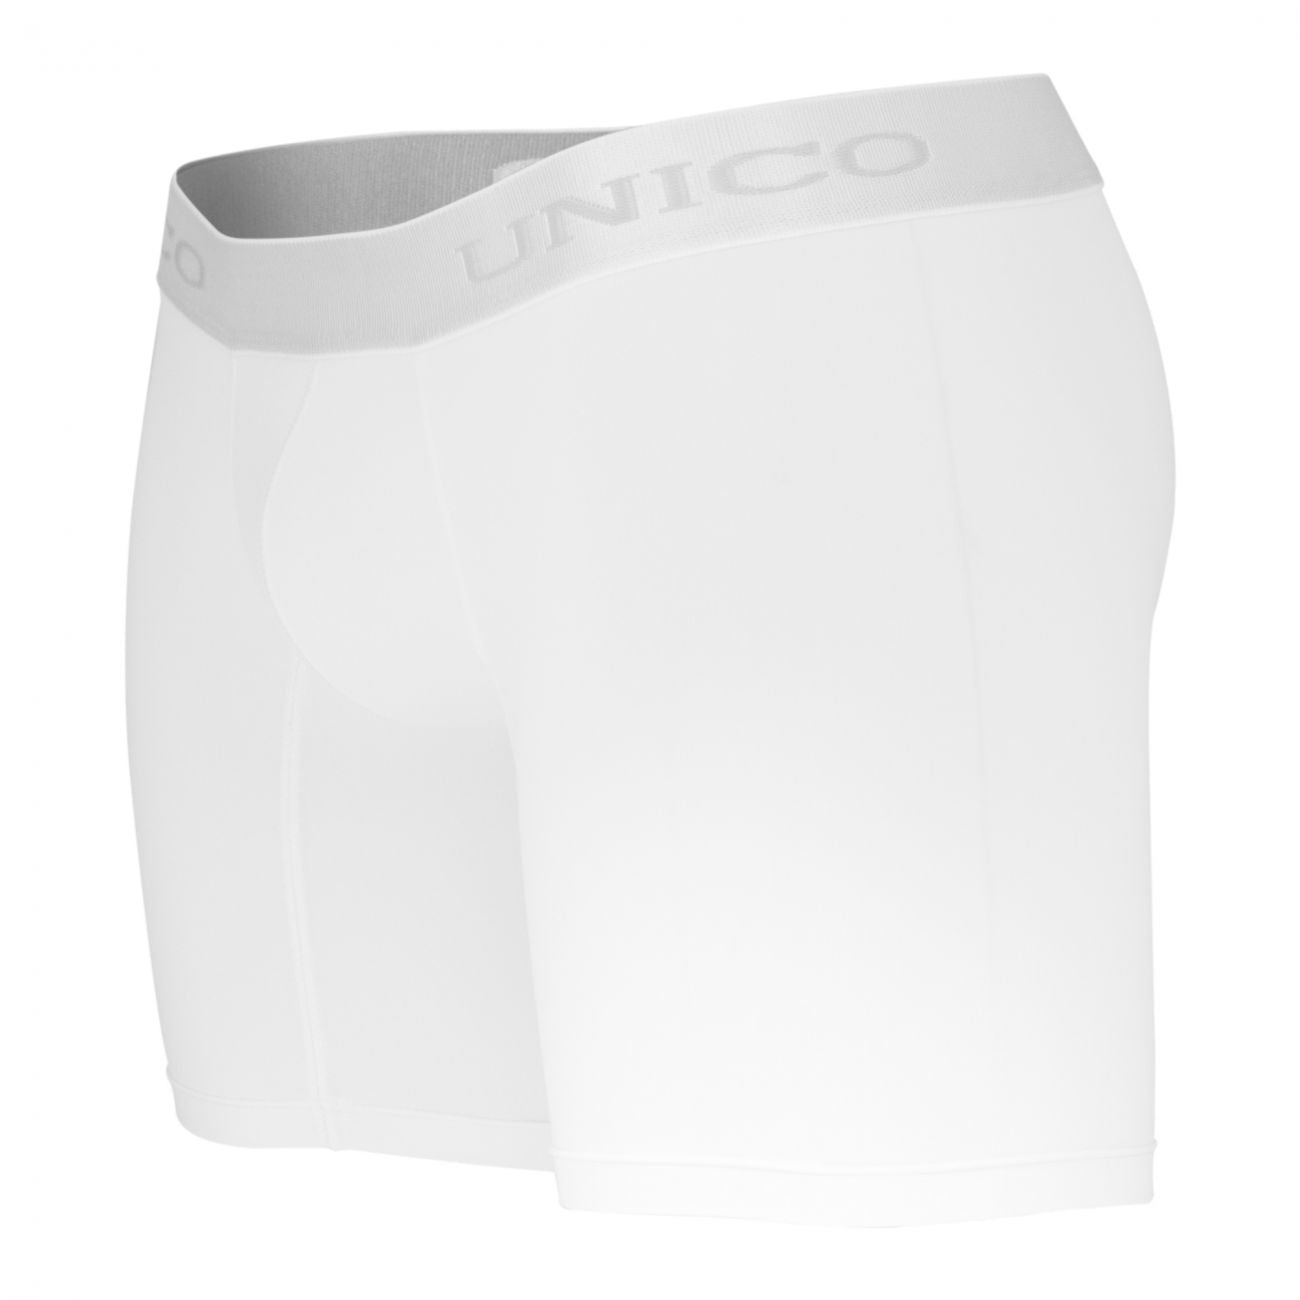 Unico 1200090300 Boxer Briefs Cristalino White